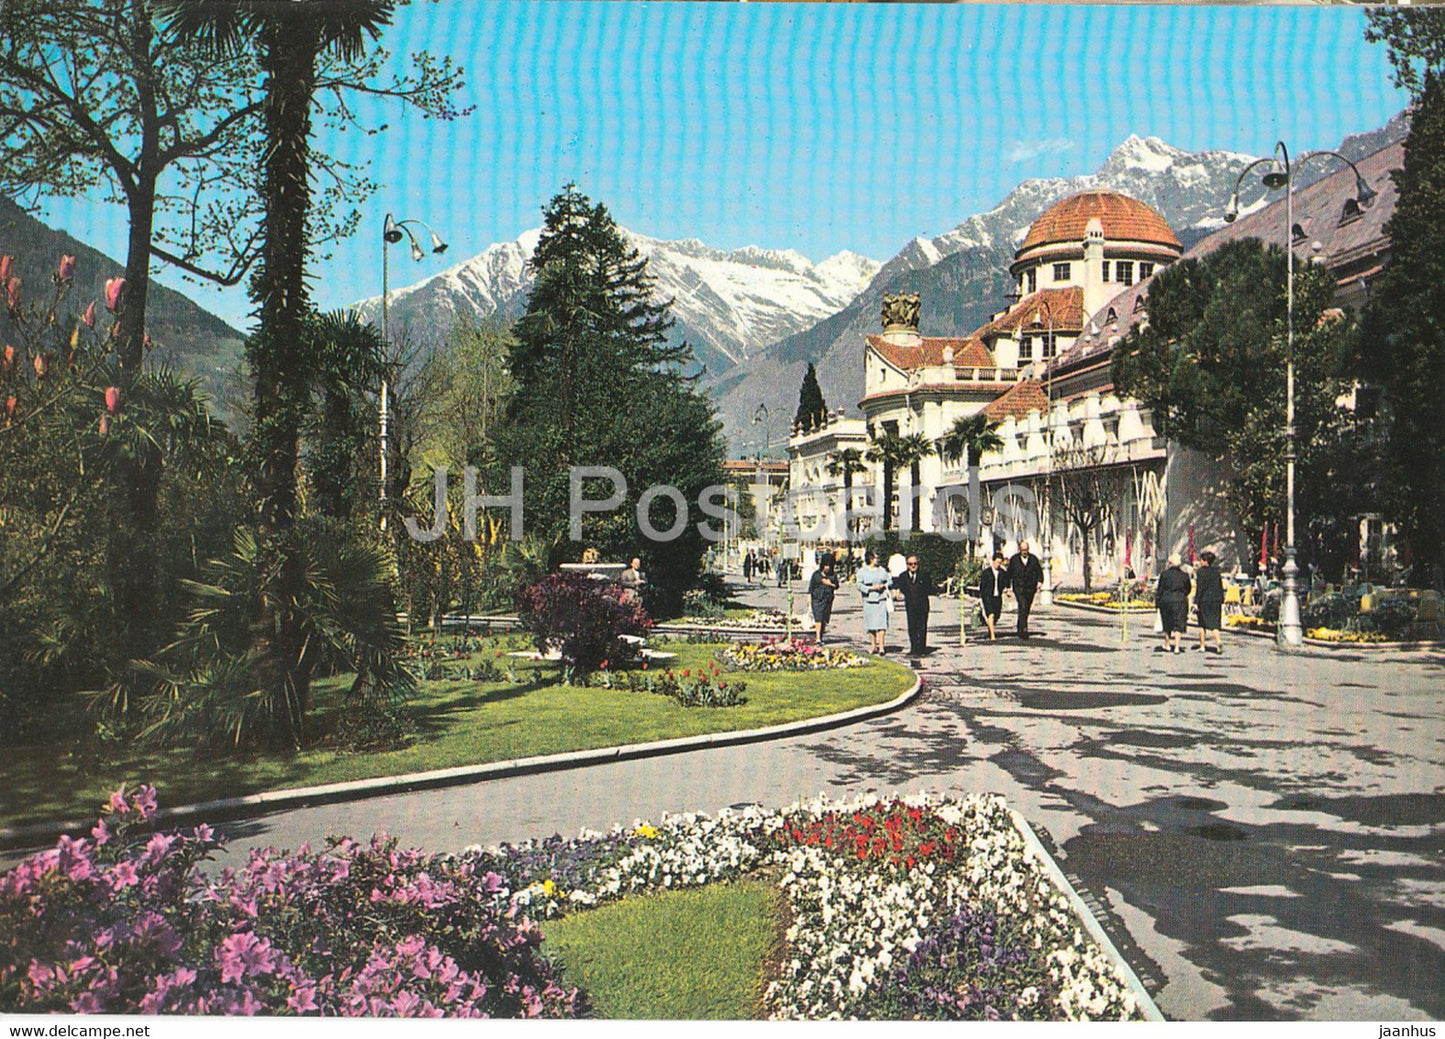 Merano - Meran - 311 m - Kurpromenade mit Kurhaus gegen Zielspitze - Tschigat - Italy - unused - JH Postcards